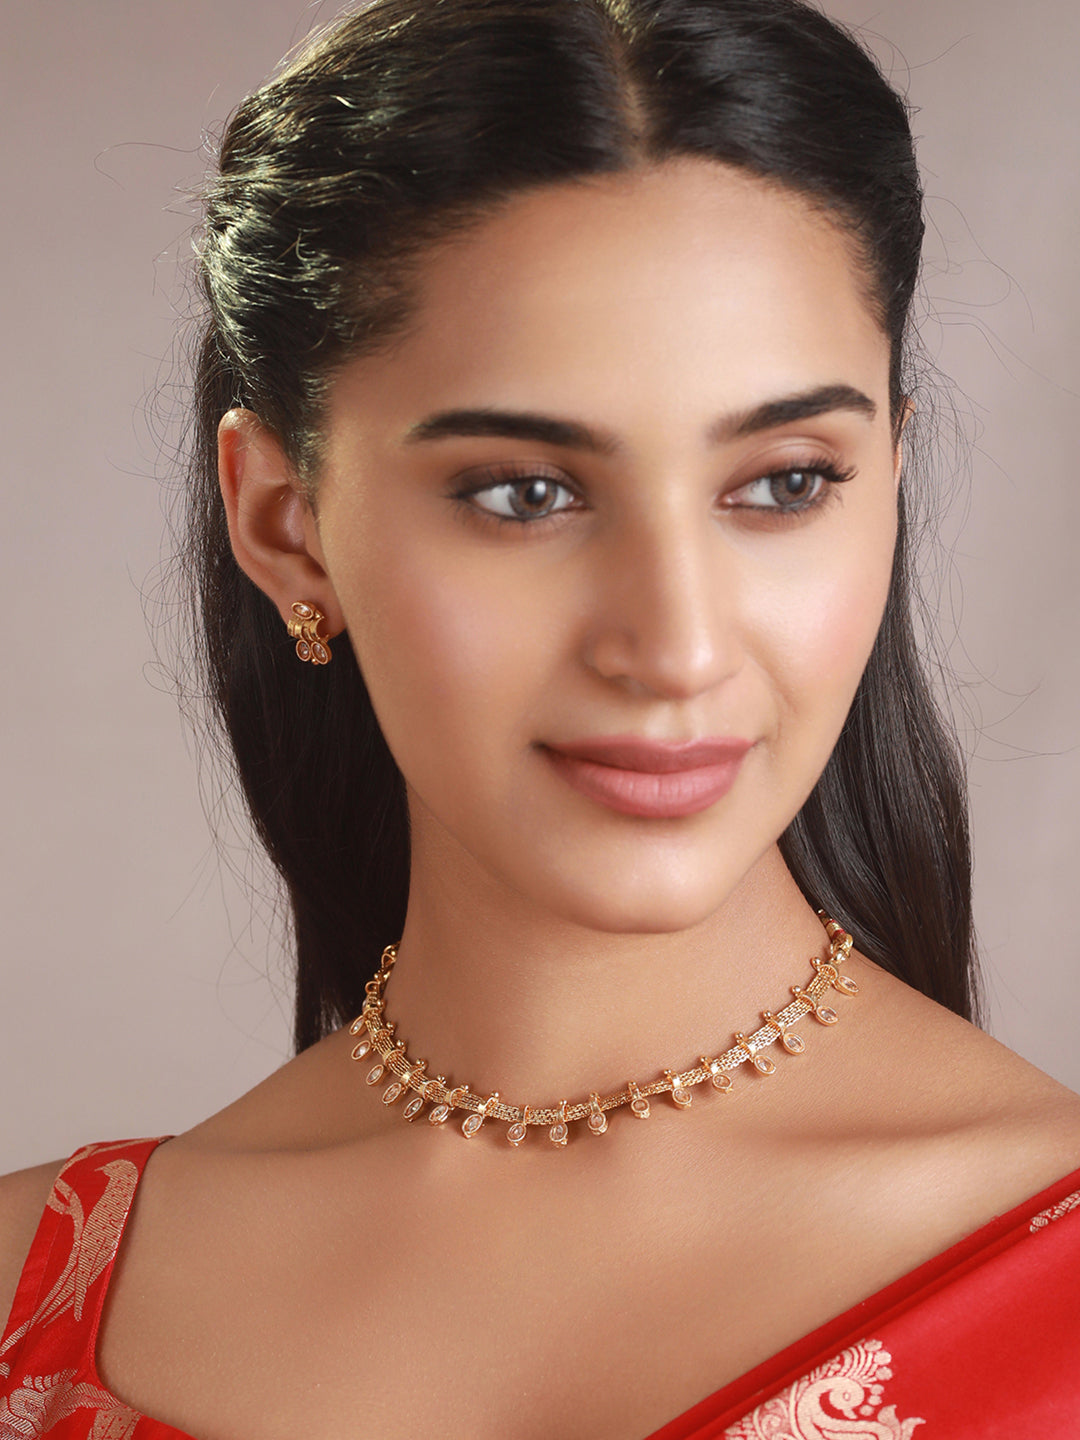 Priyaasi Minimal Studded Leaves Gold-Plated Jewellery Set